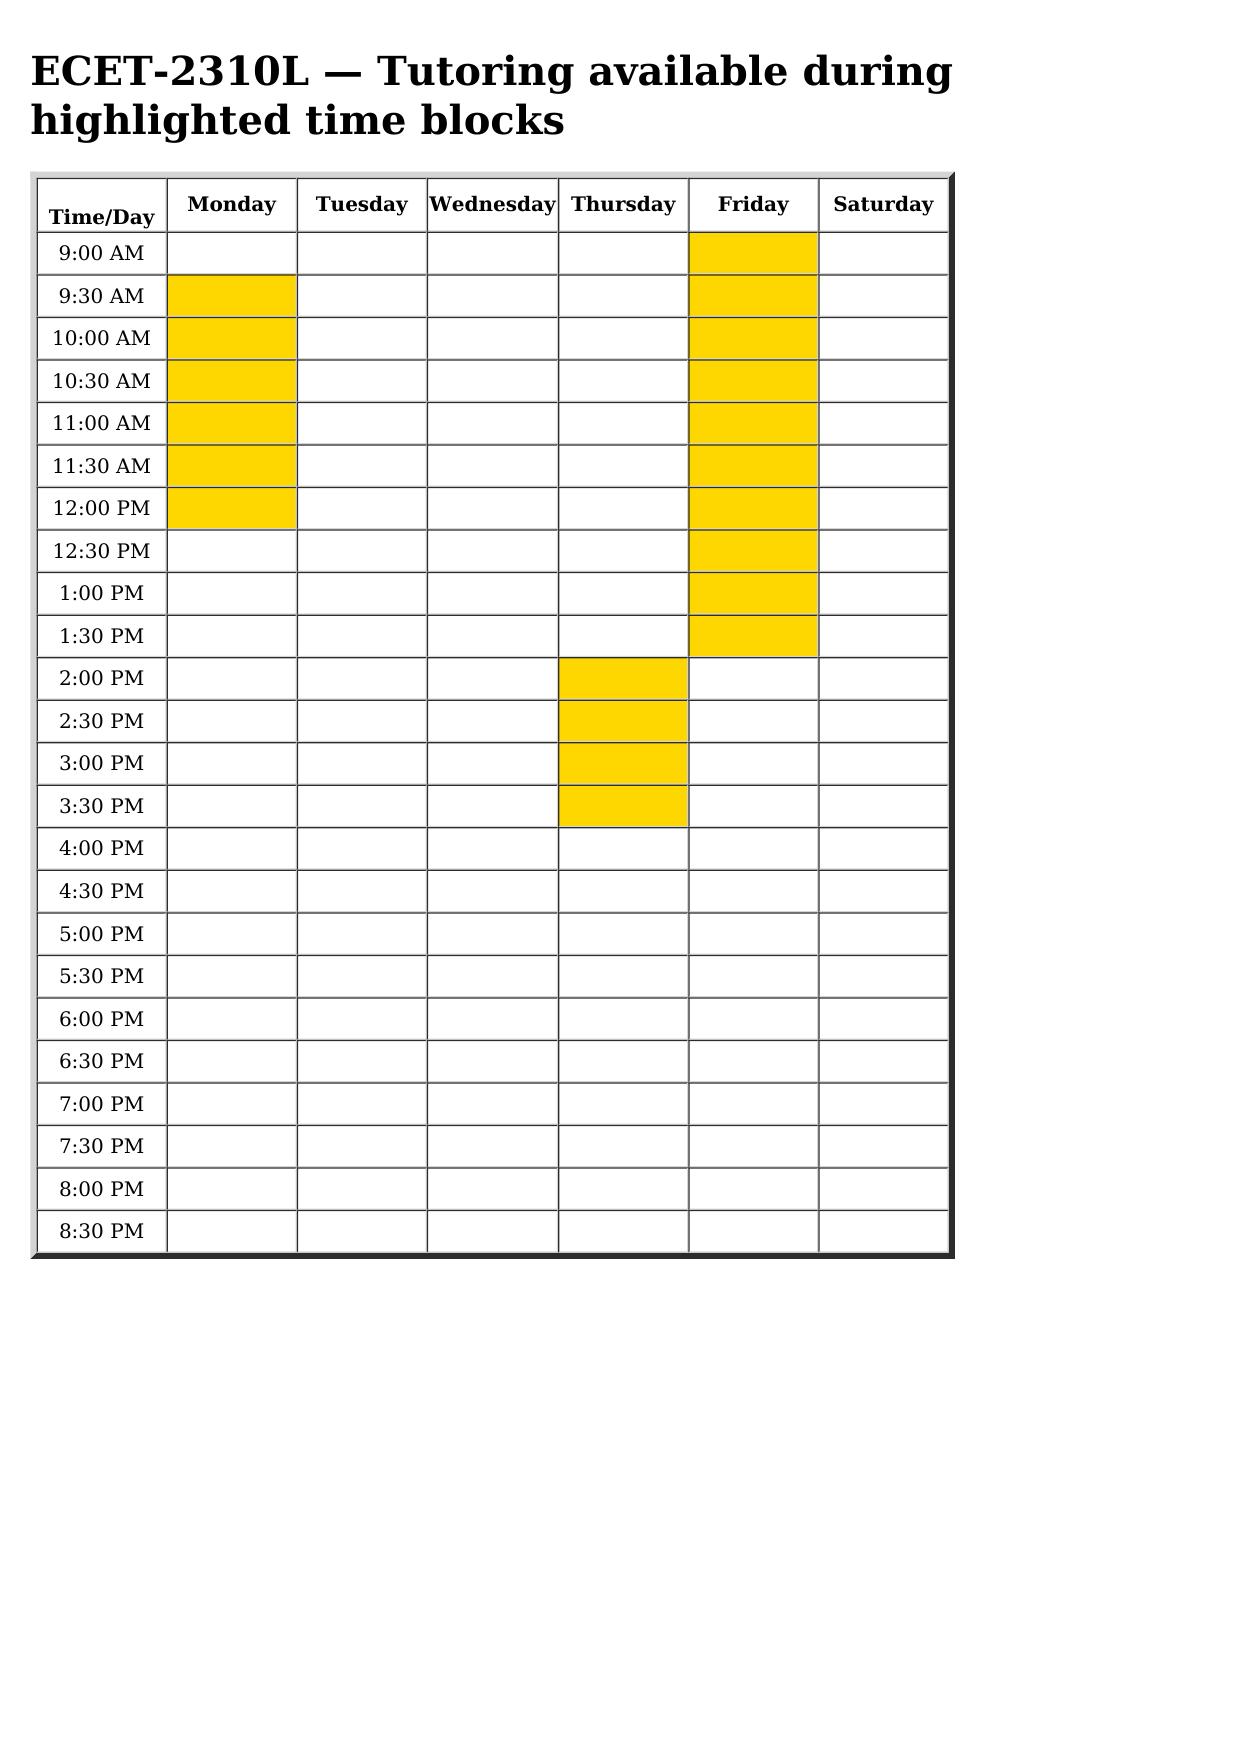 ecet 2310l schedule